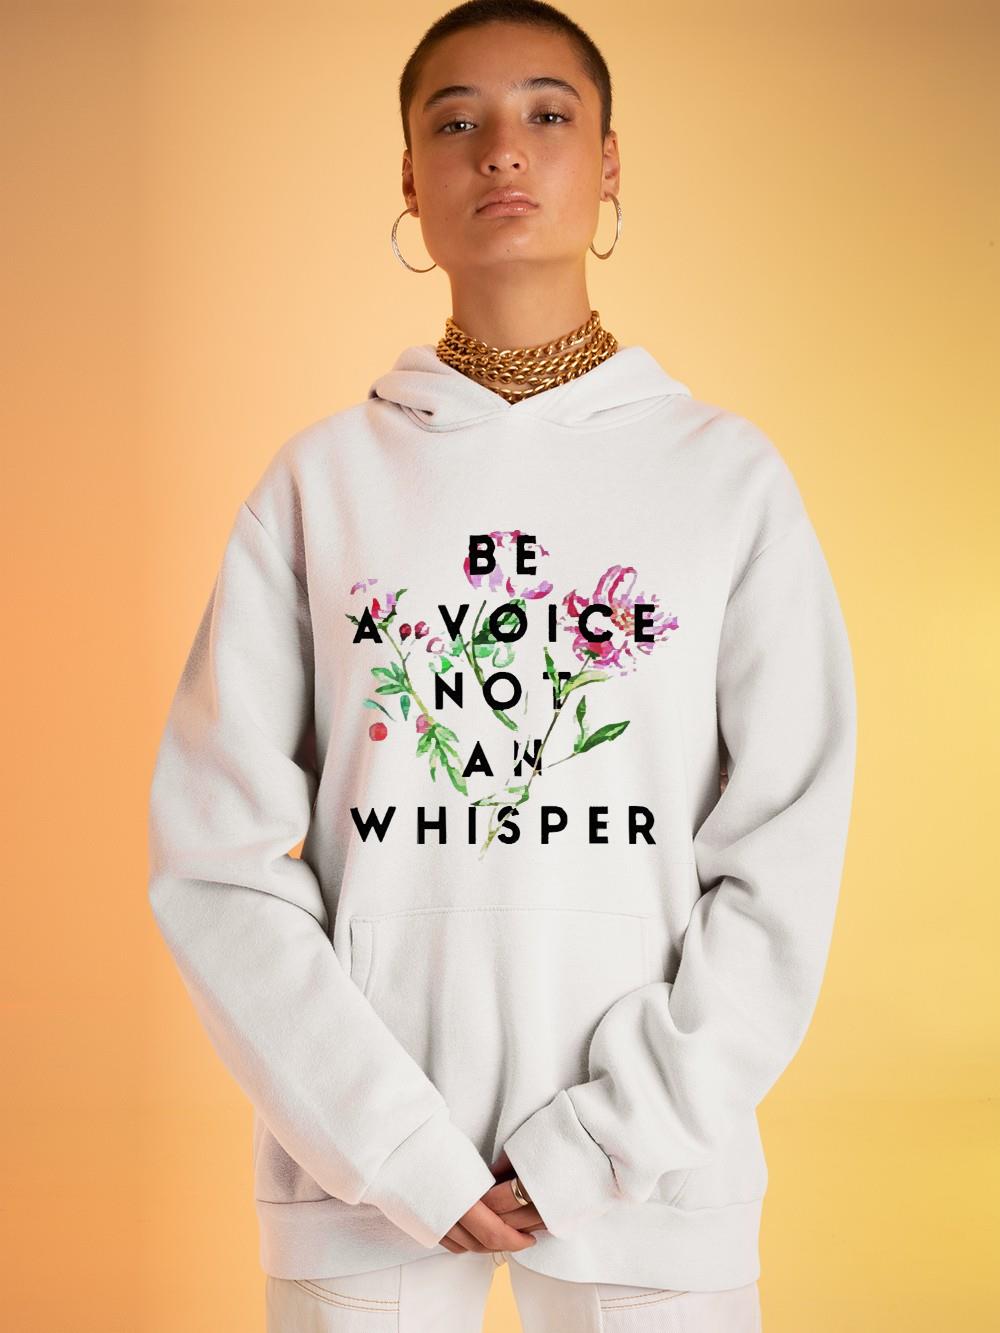 Be a voice not an whisper shirt